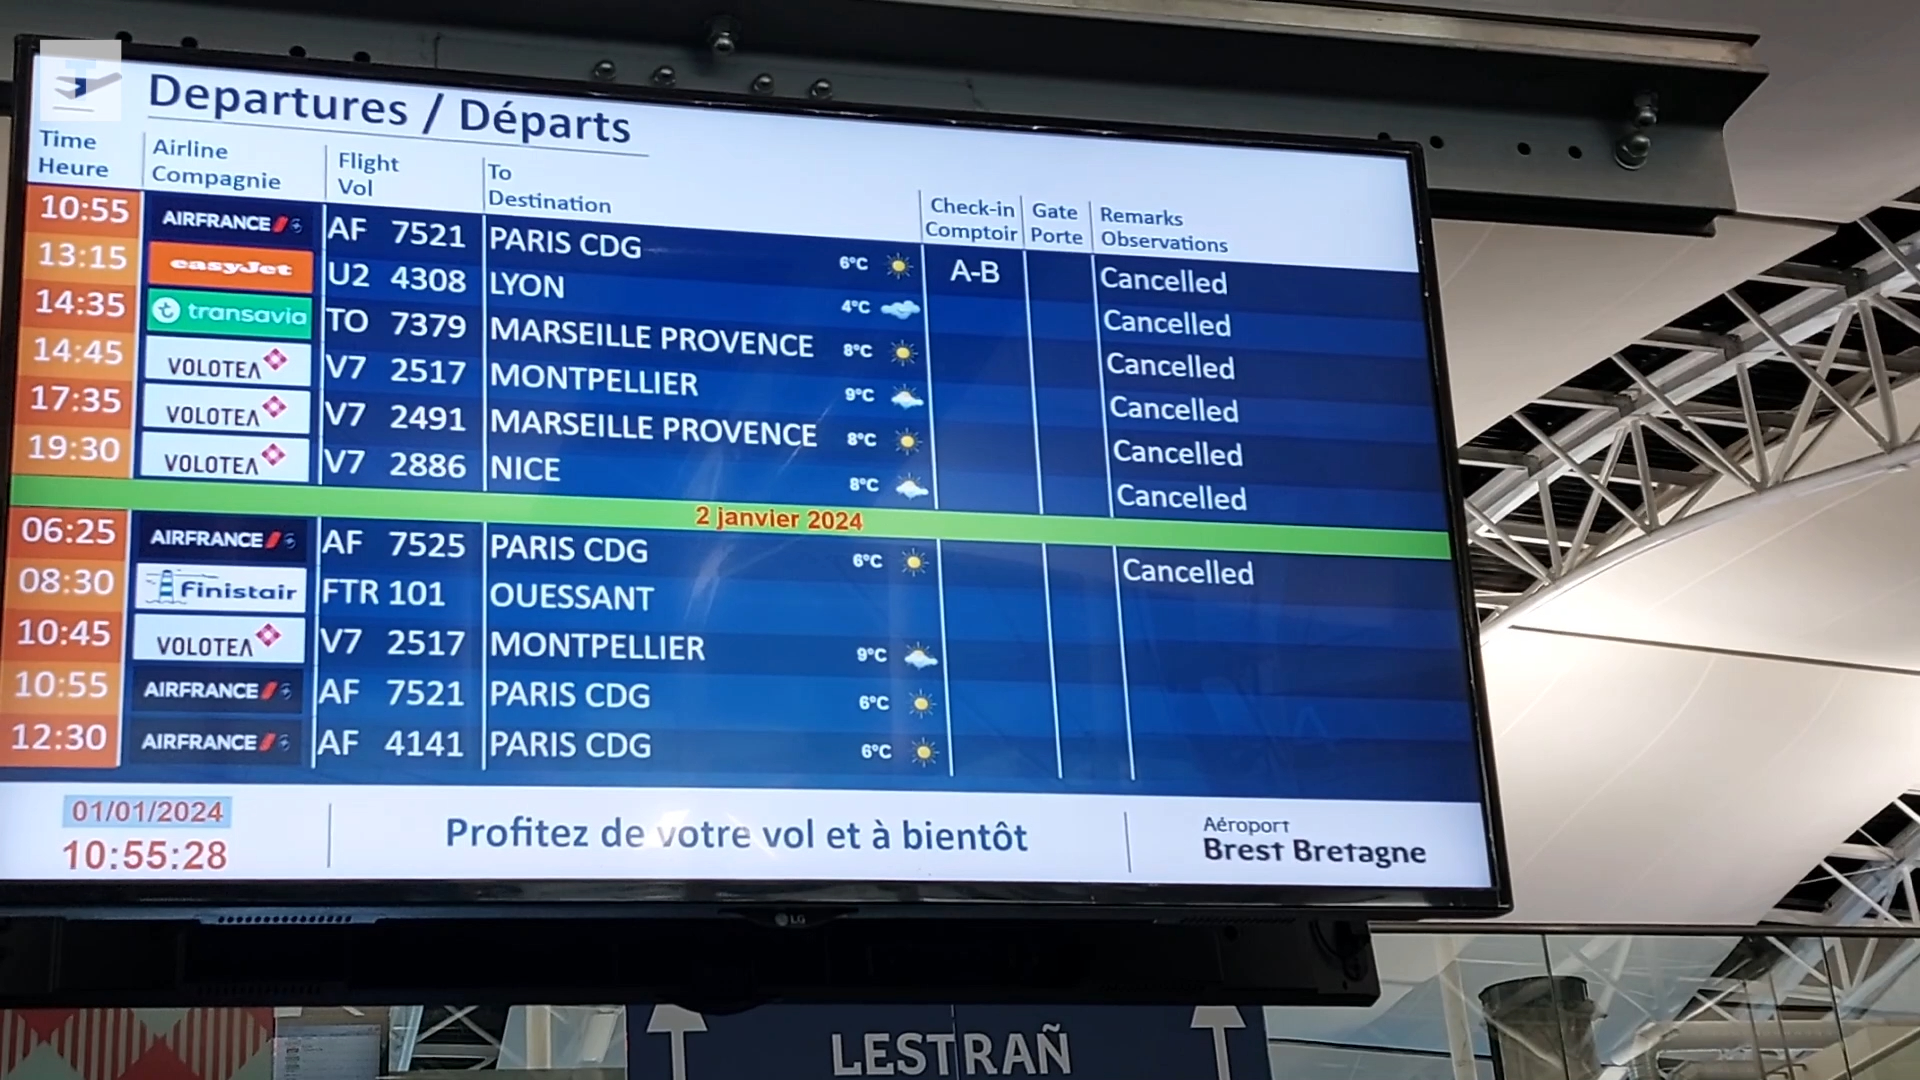 Foudroyé samedi, l'aéroport de Brest toujours paralysé [Vidéo]